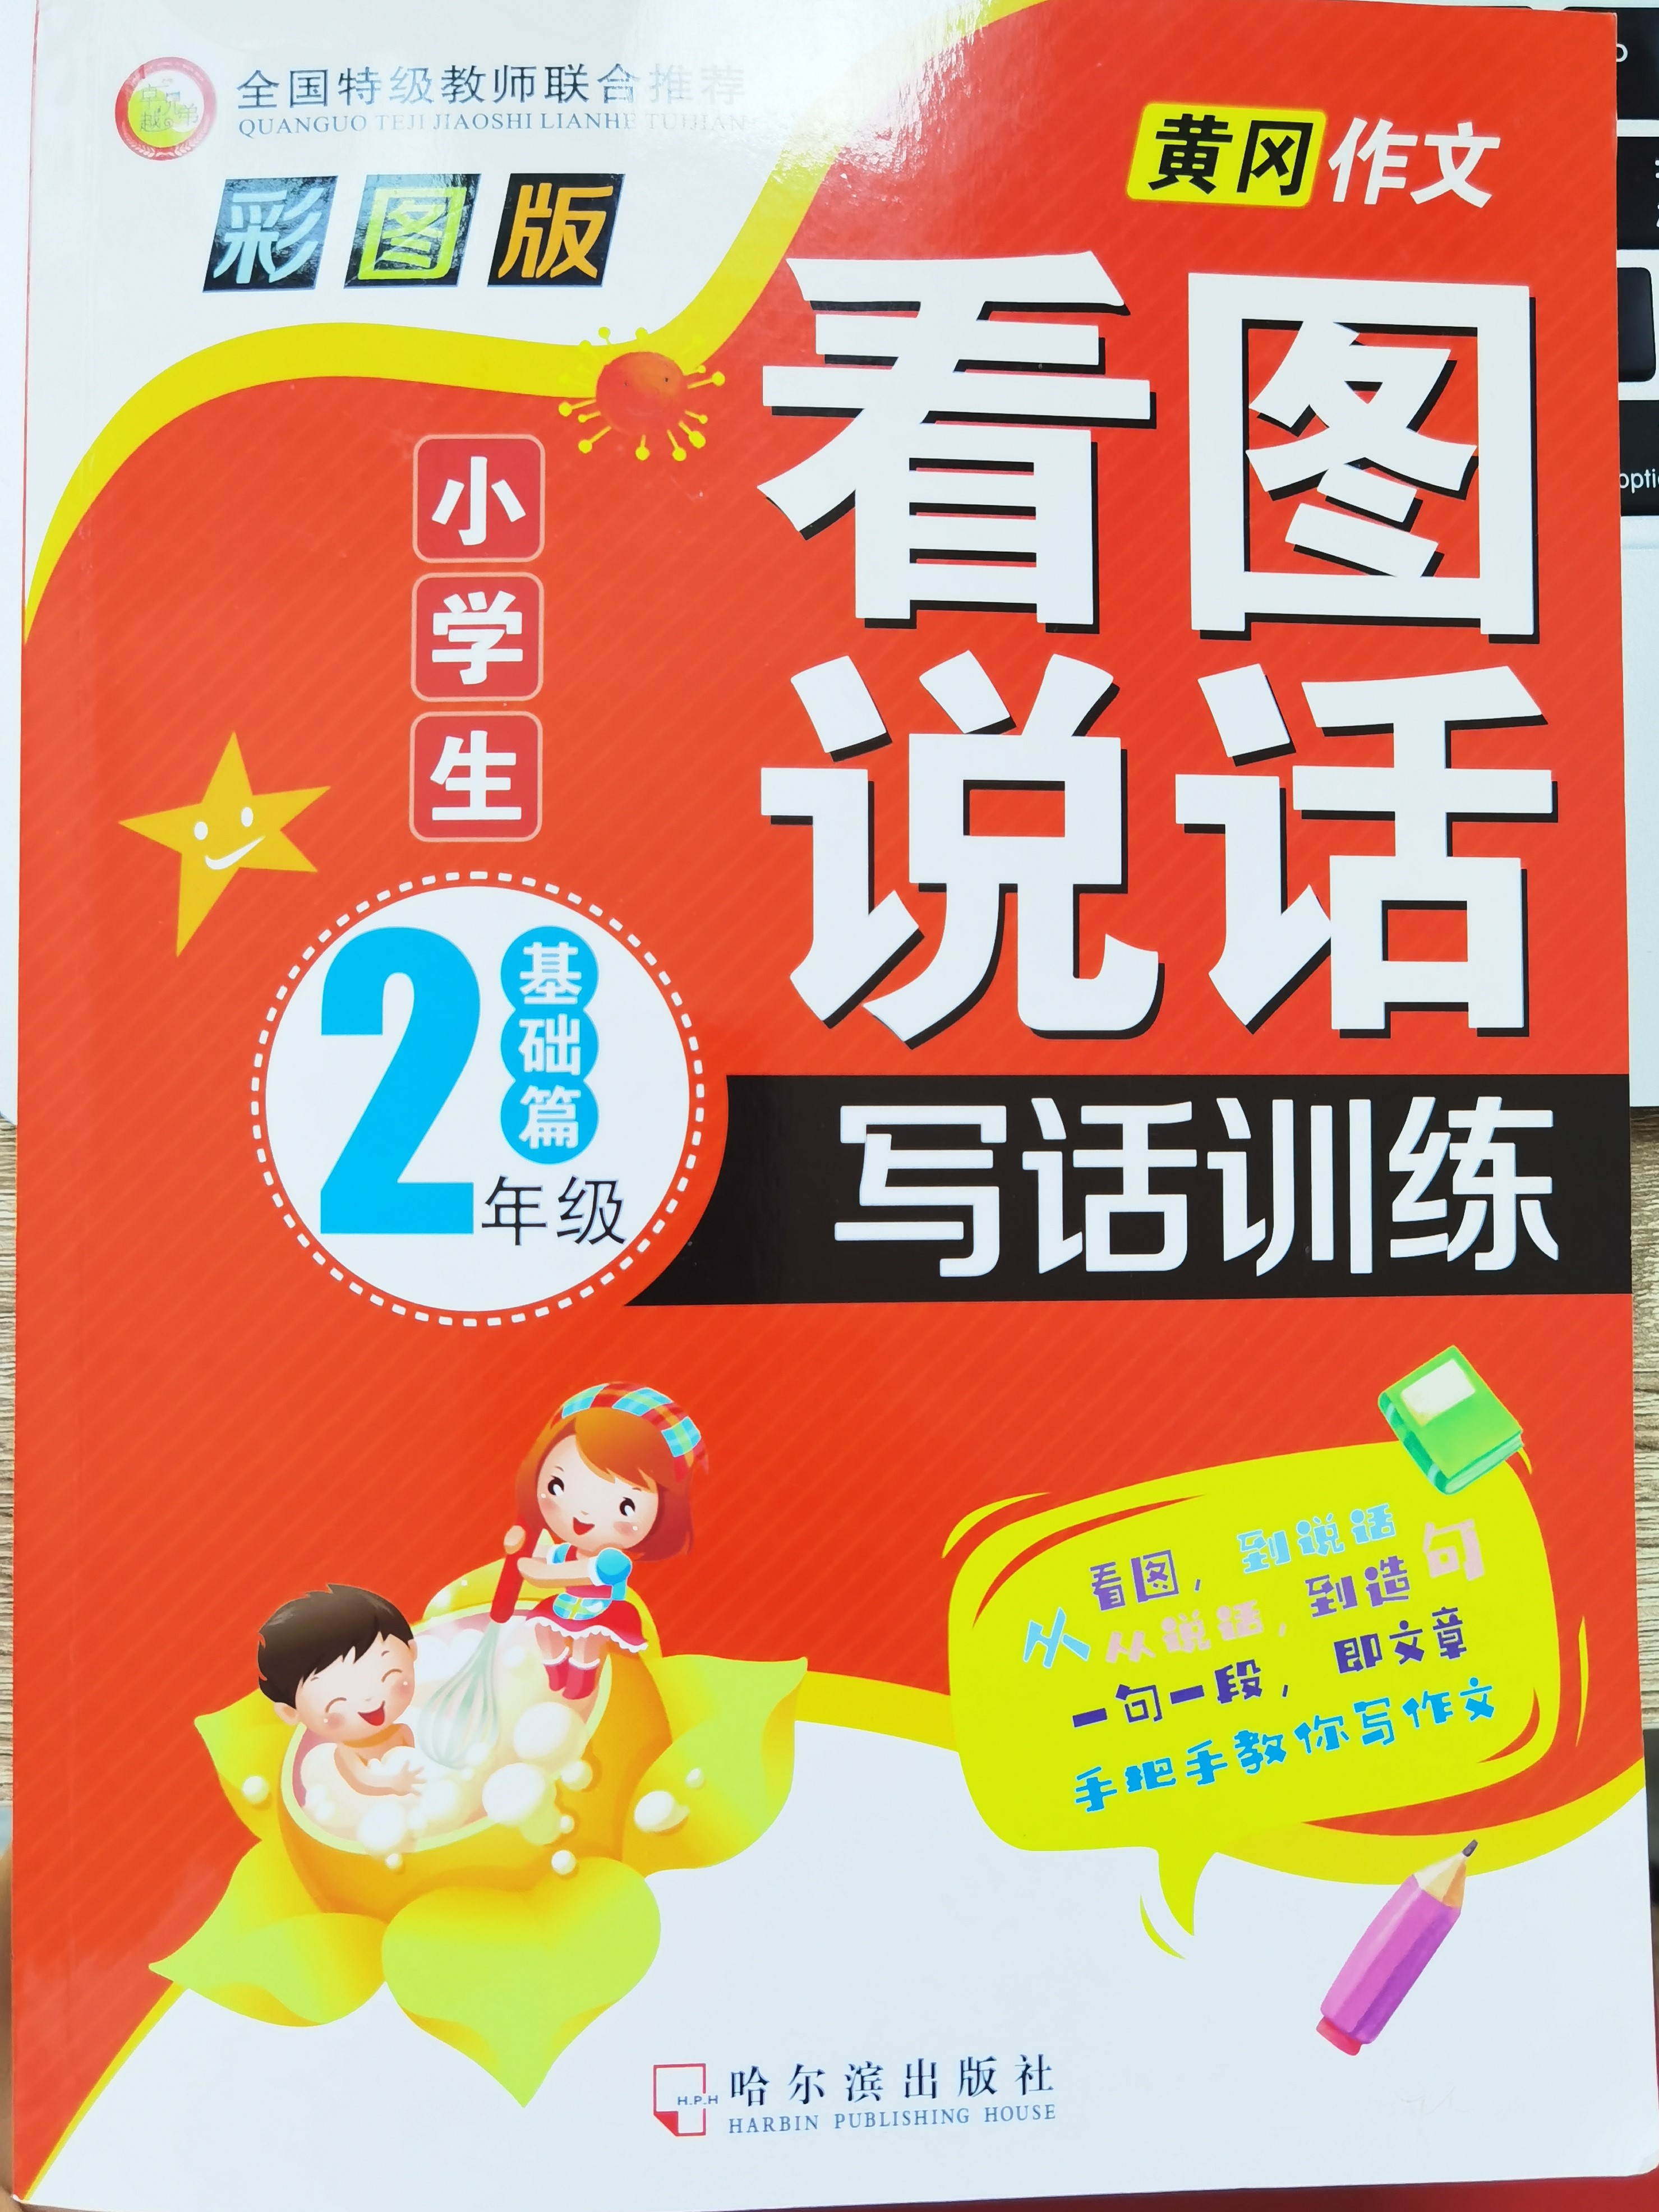 หนังสือแบบฝึกหัดภาษาจีนสำหรับเด็กชั้นประถมศึกษาปีที่ 2 ระดับเริ่มต้น